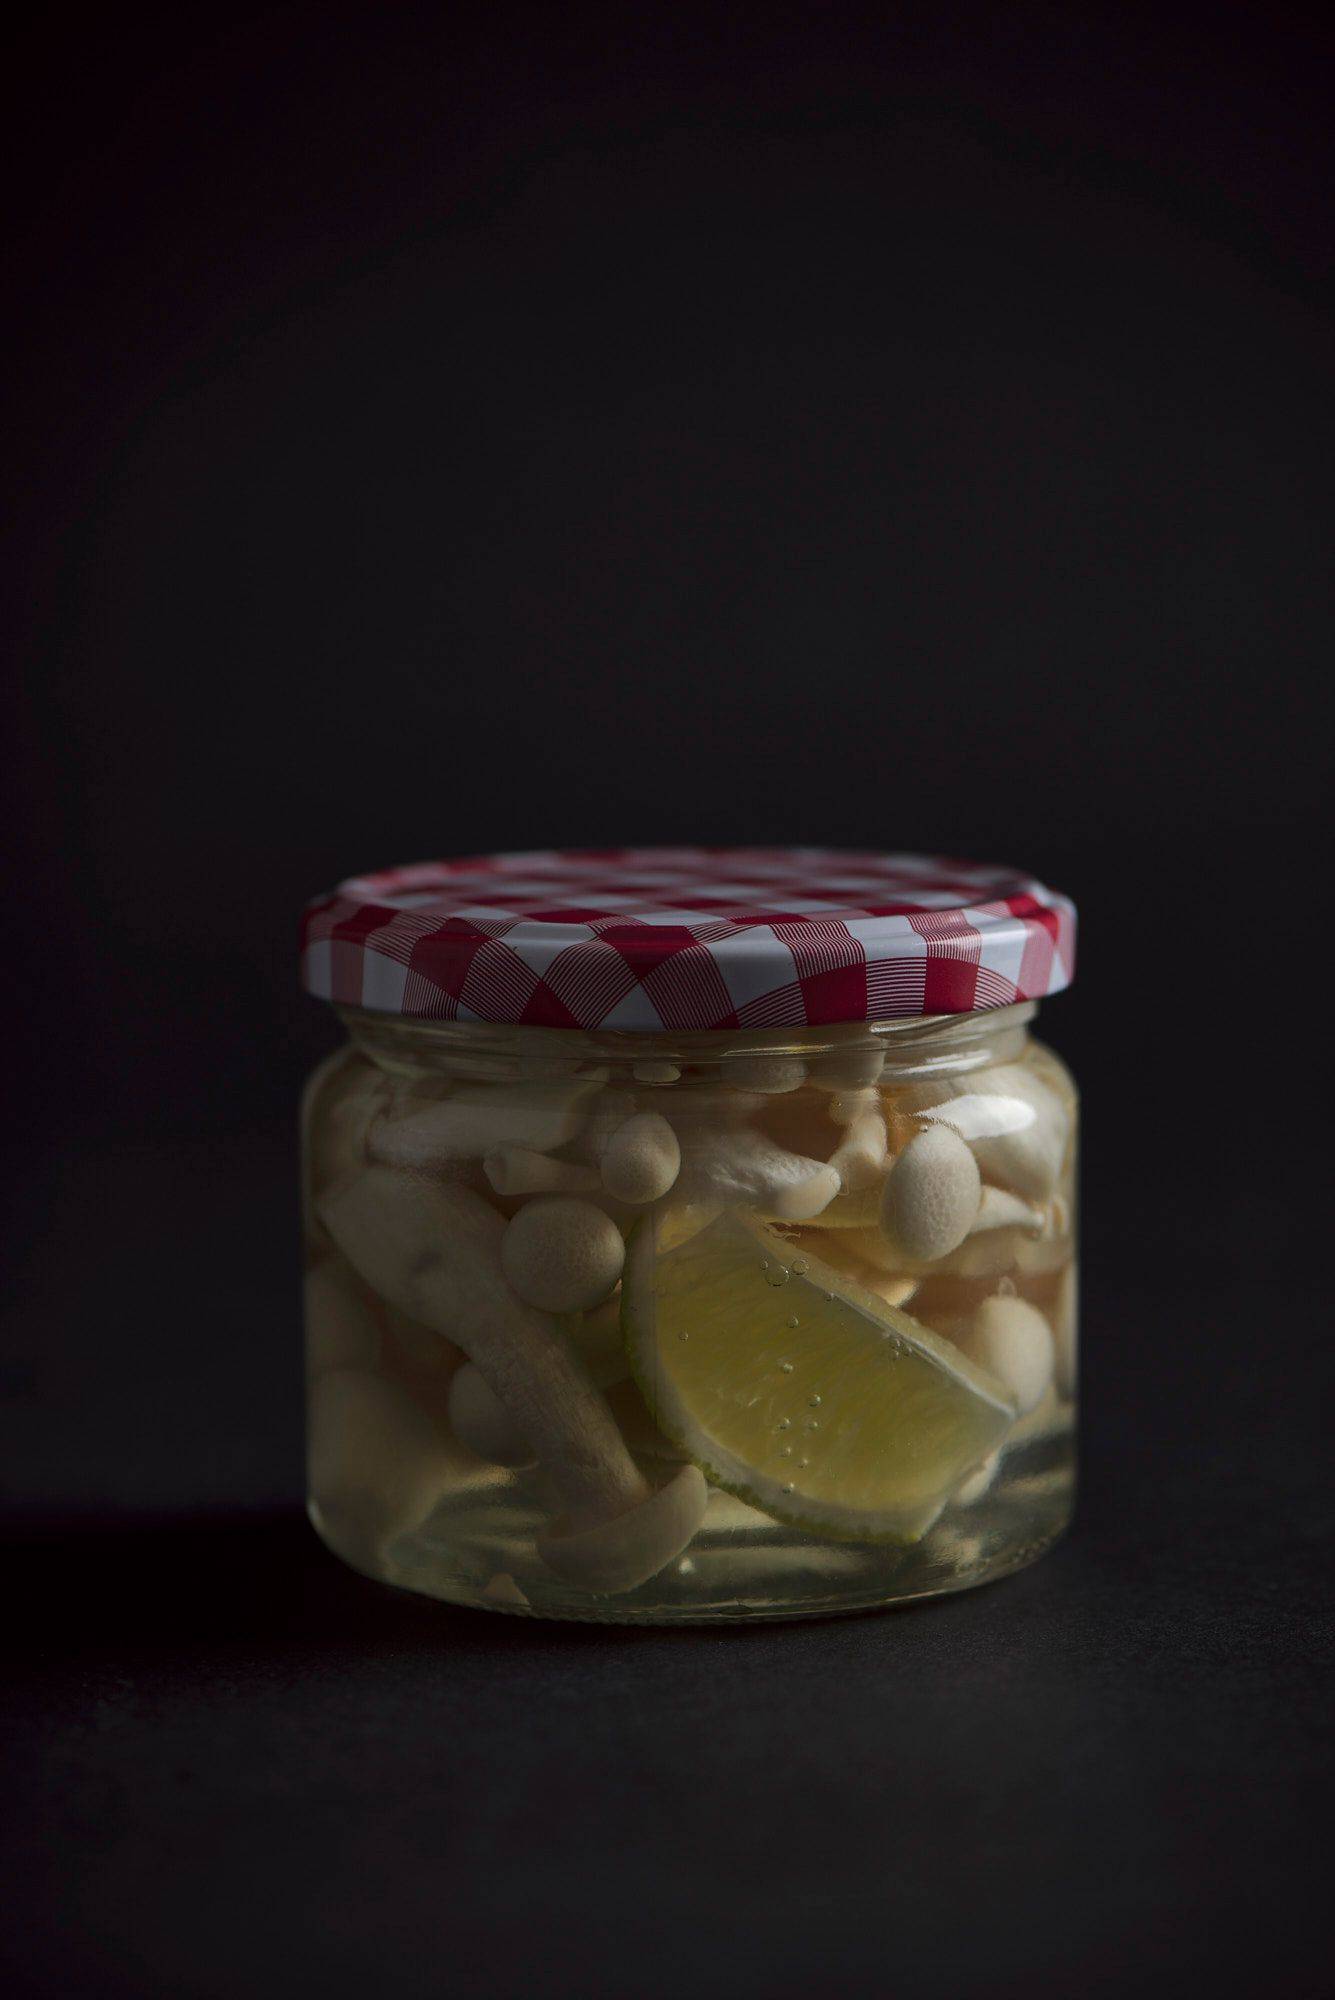 mushoom pickles in a jar on a gray sapienstone top